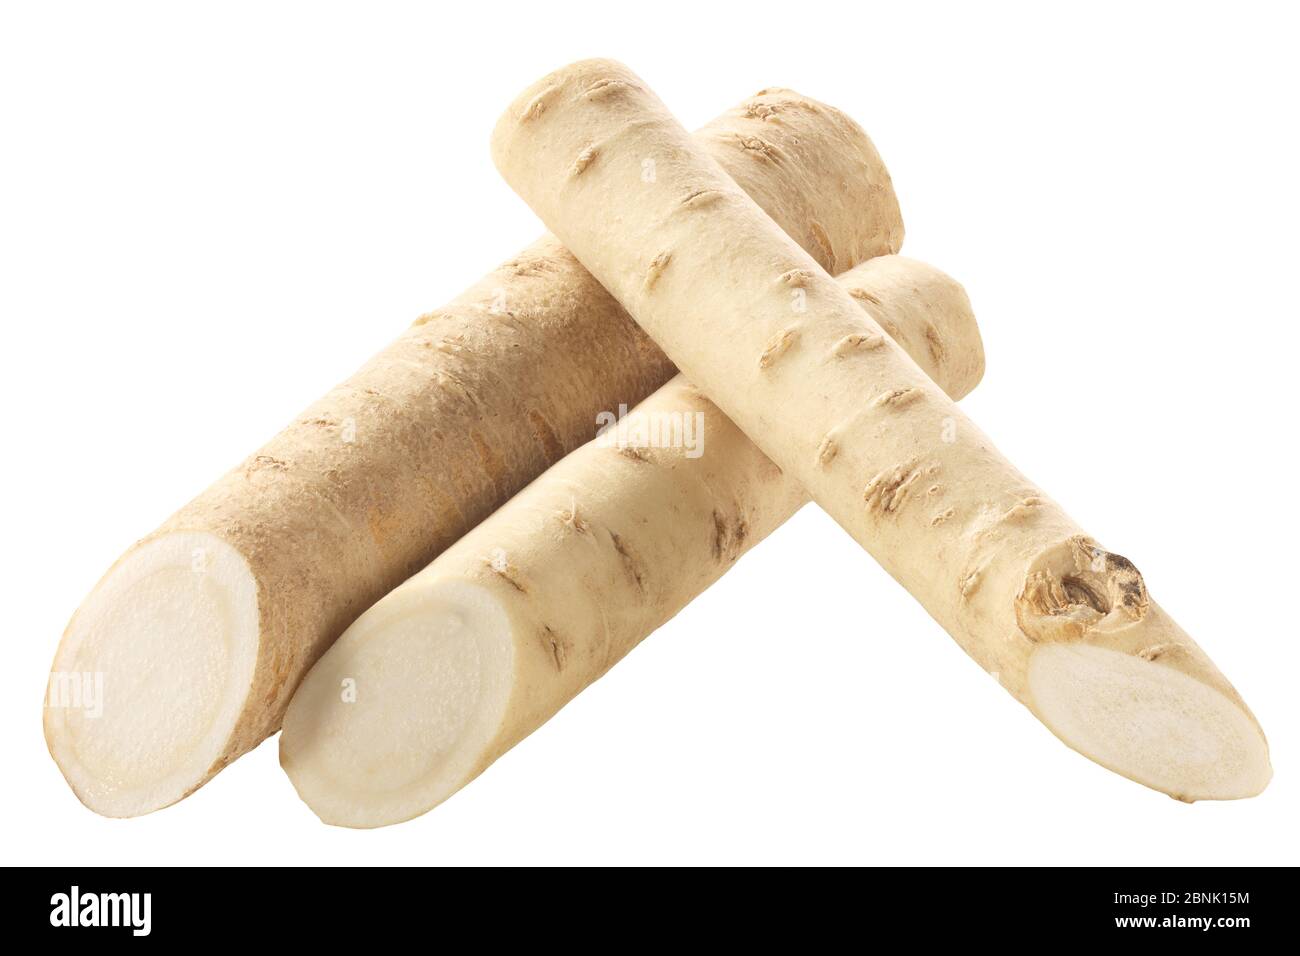 Cut Horseradish roots (Armoracia rusticana taproot), isolated Stock Photo